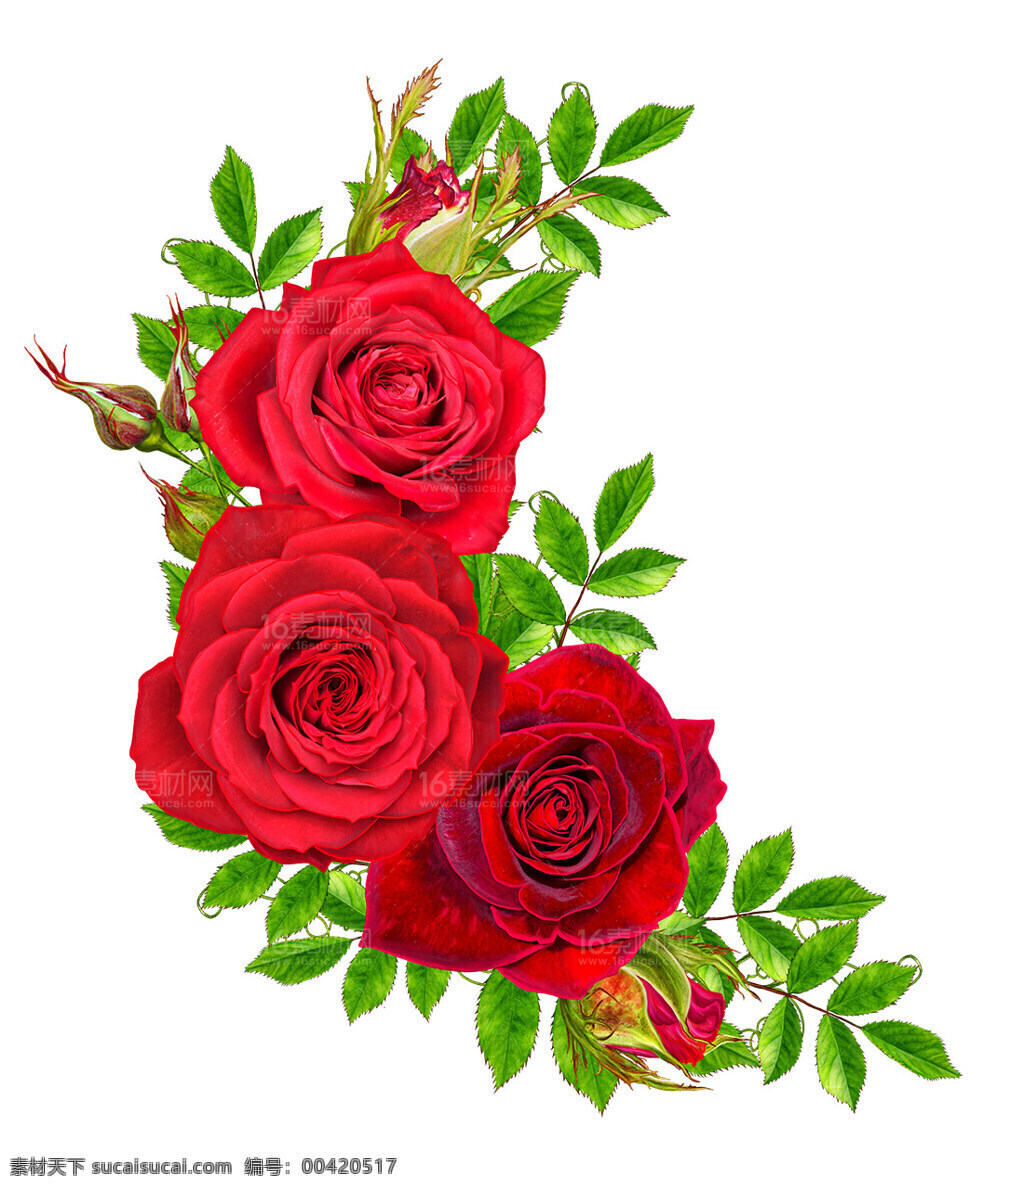 玫瑰花朵 花卉 玫瑰 红色玫瑰 情人 爱情 情侣 鲜花 花朵 红玫瑰 红花朵 鲜花图片 鲜花素材 鲜花店铺 礼物 植物 盆栽 夏天 自然